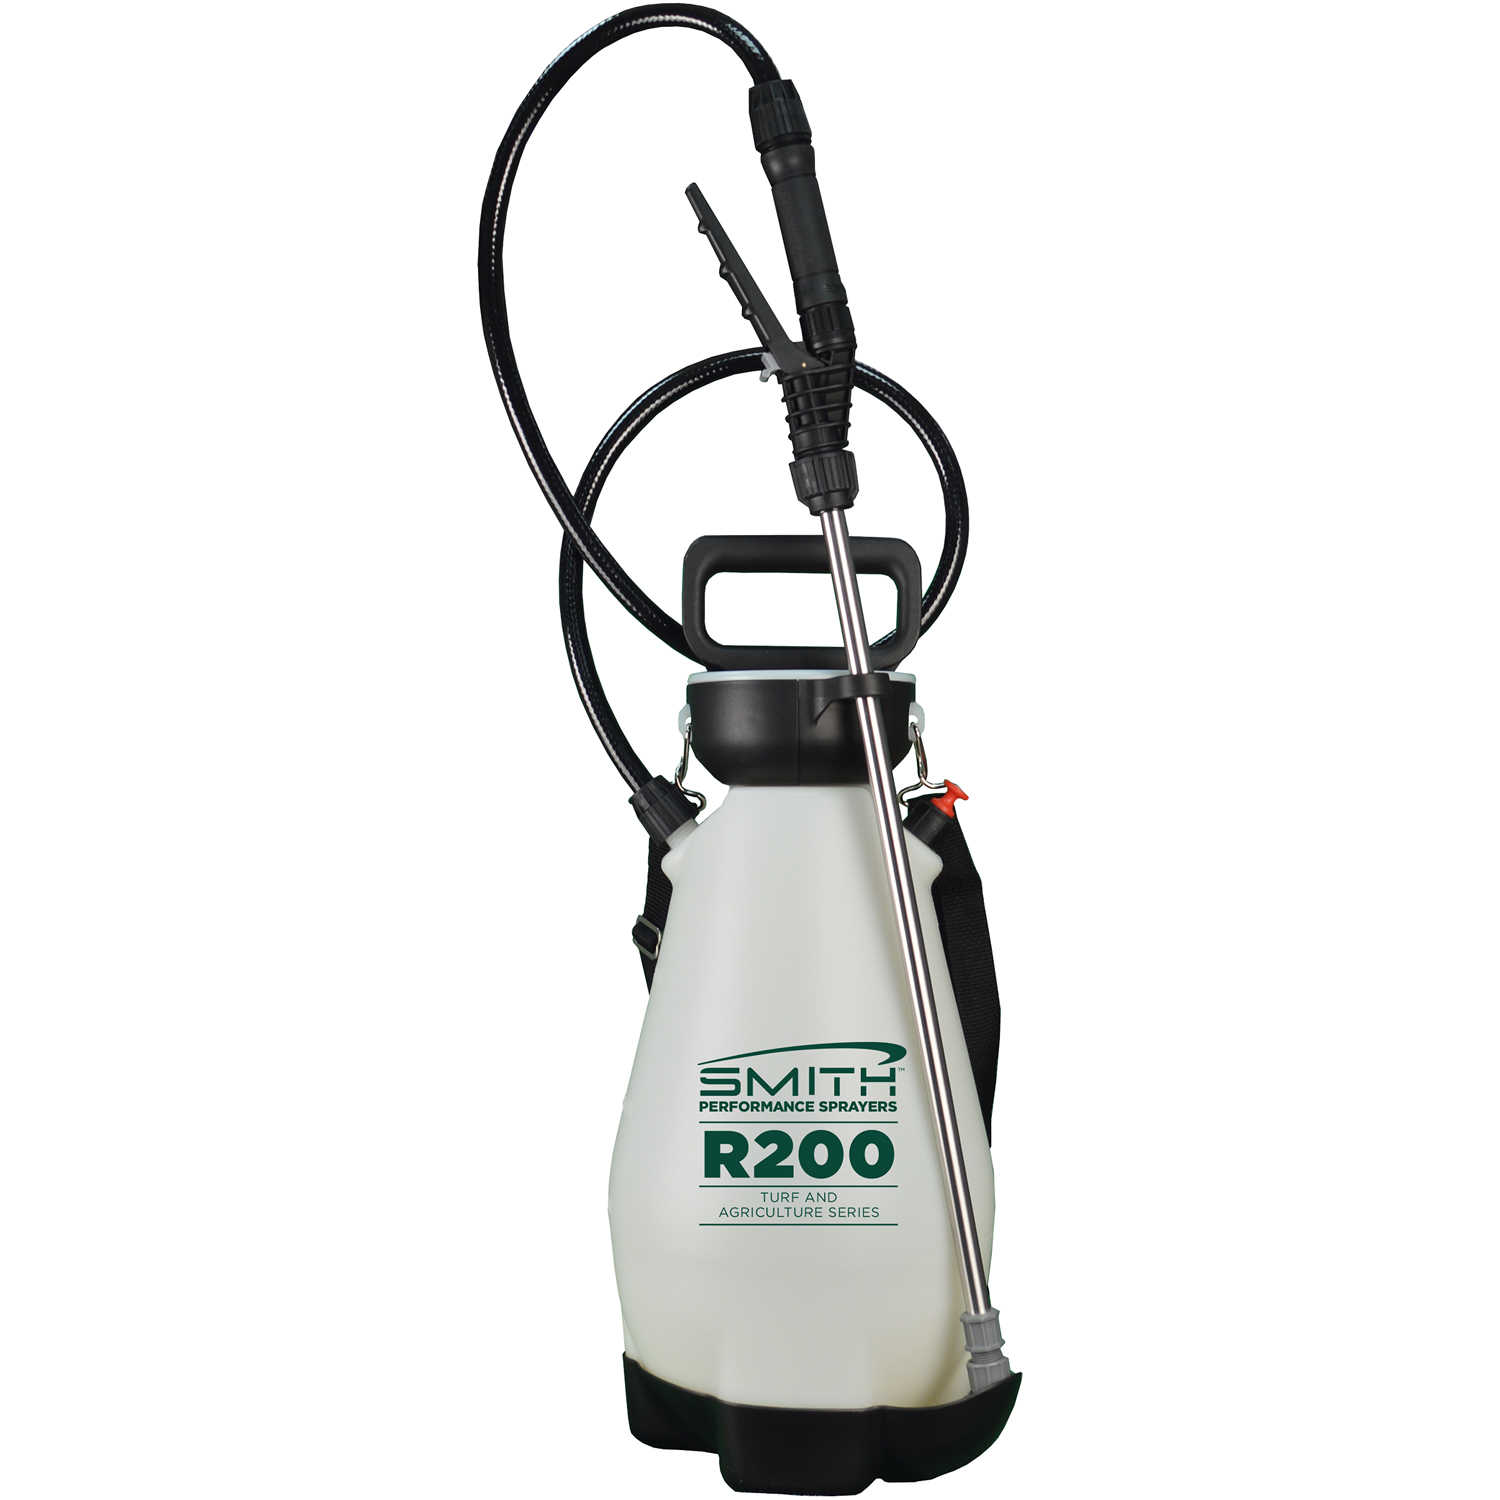 SMITH R200 2 Gallon Professional Pressure Sprayer 190462